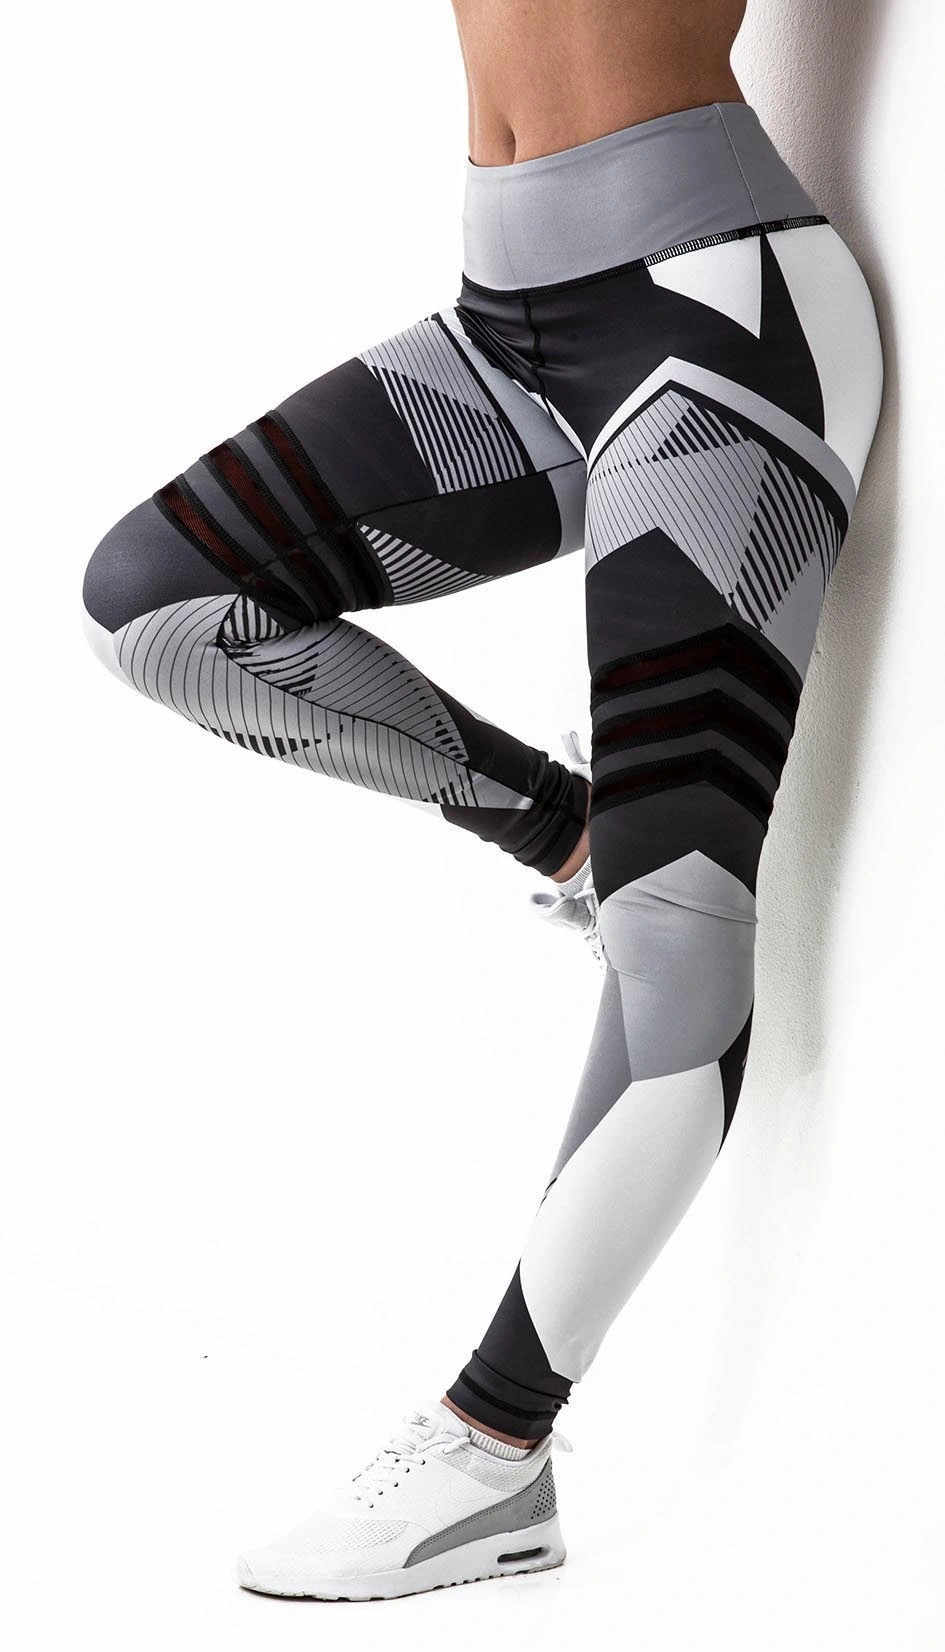 New Mesh Pattern Print Fitness Leggings for Women Sporting Workout Leggins Trousers Slim Black White Pant